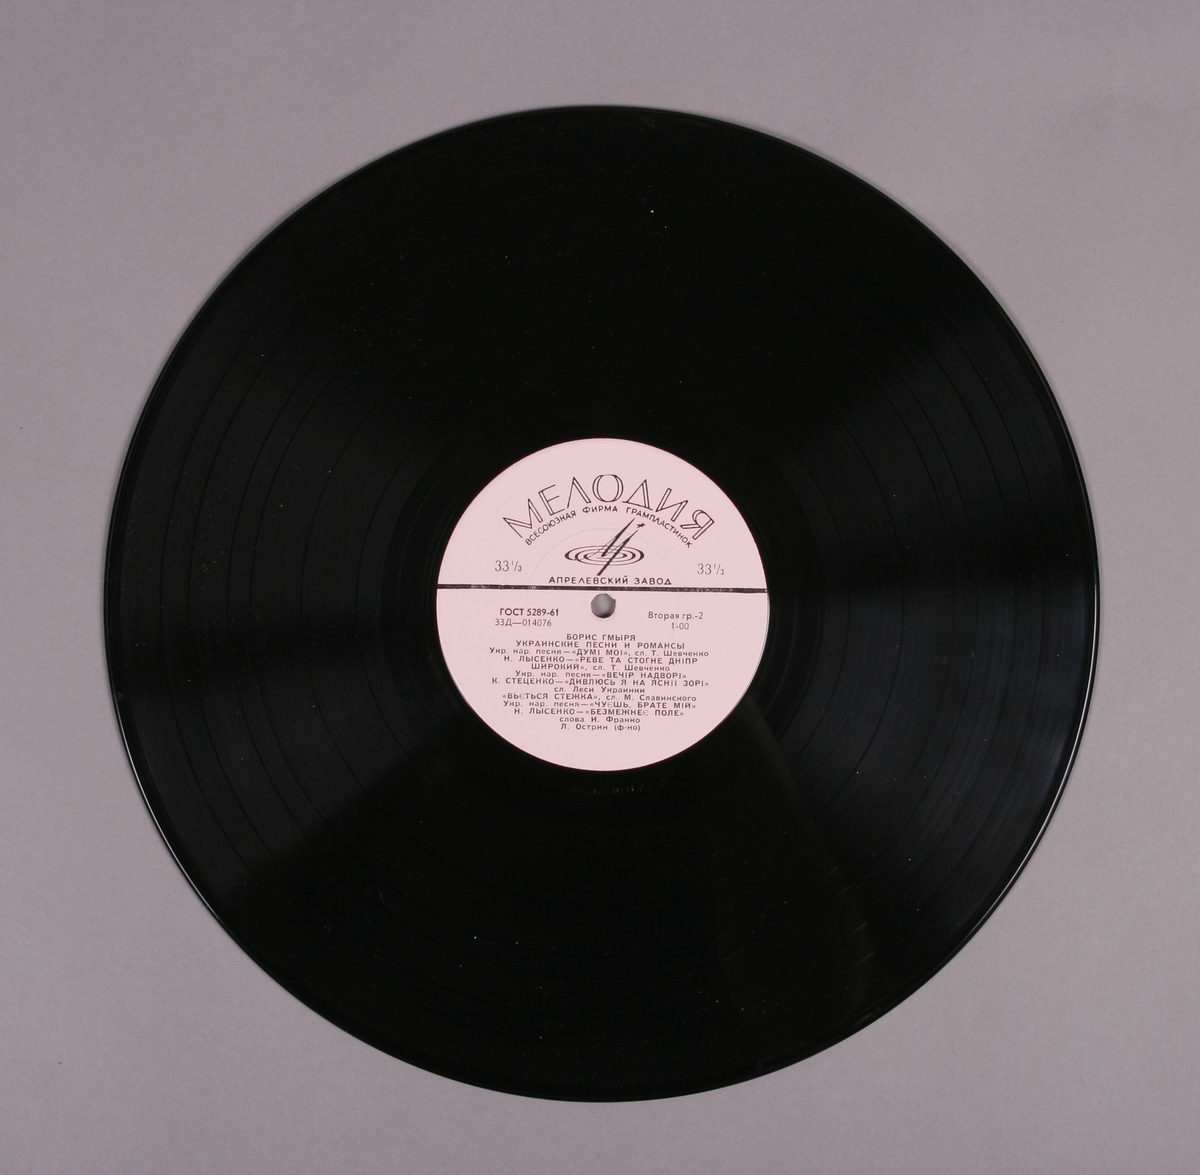 Grammofonplate i svart vinyl og plateomslag i papir. Plata ligger i en plastlomme.